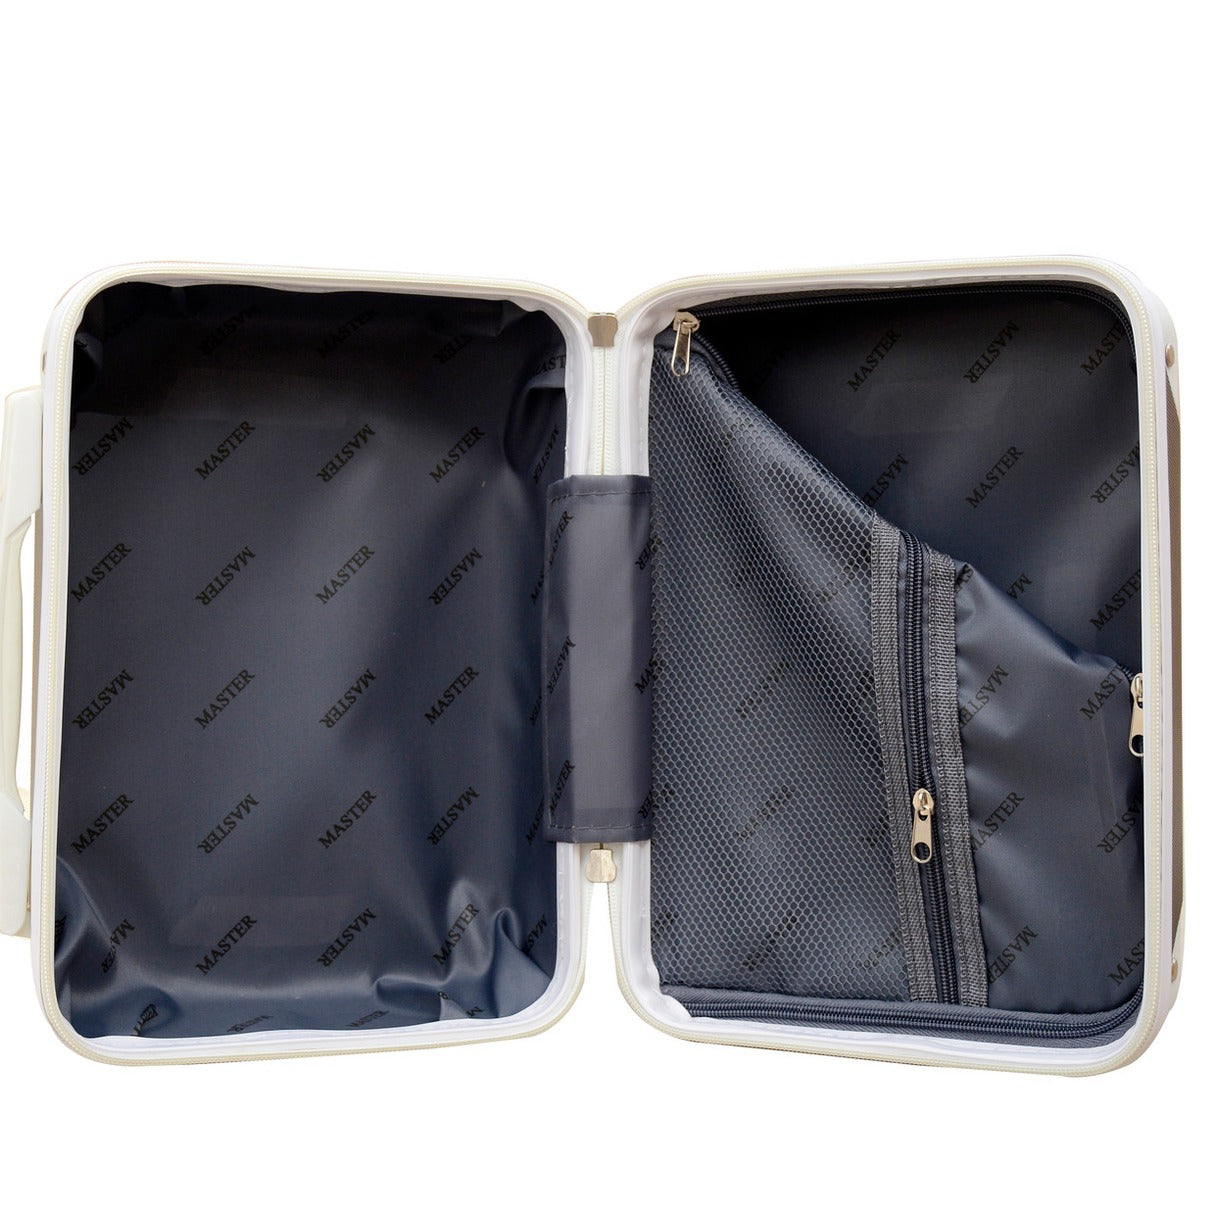 Corner Guard Lightweight ABS Beauty Case | Make up Organizer Bag